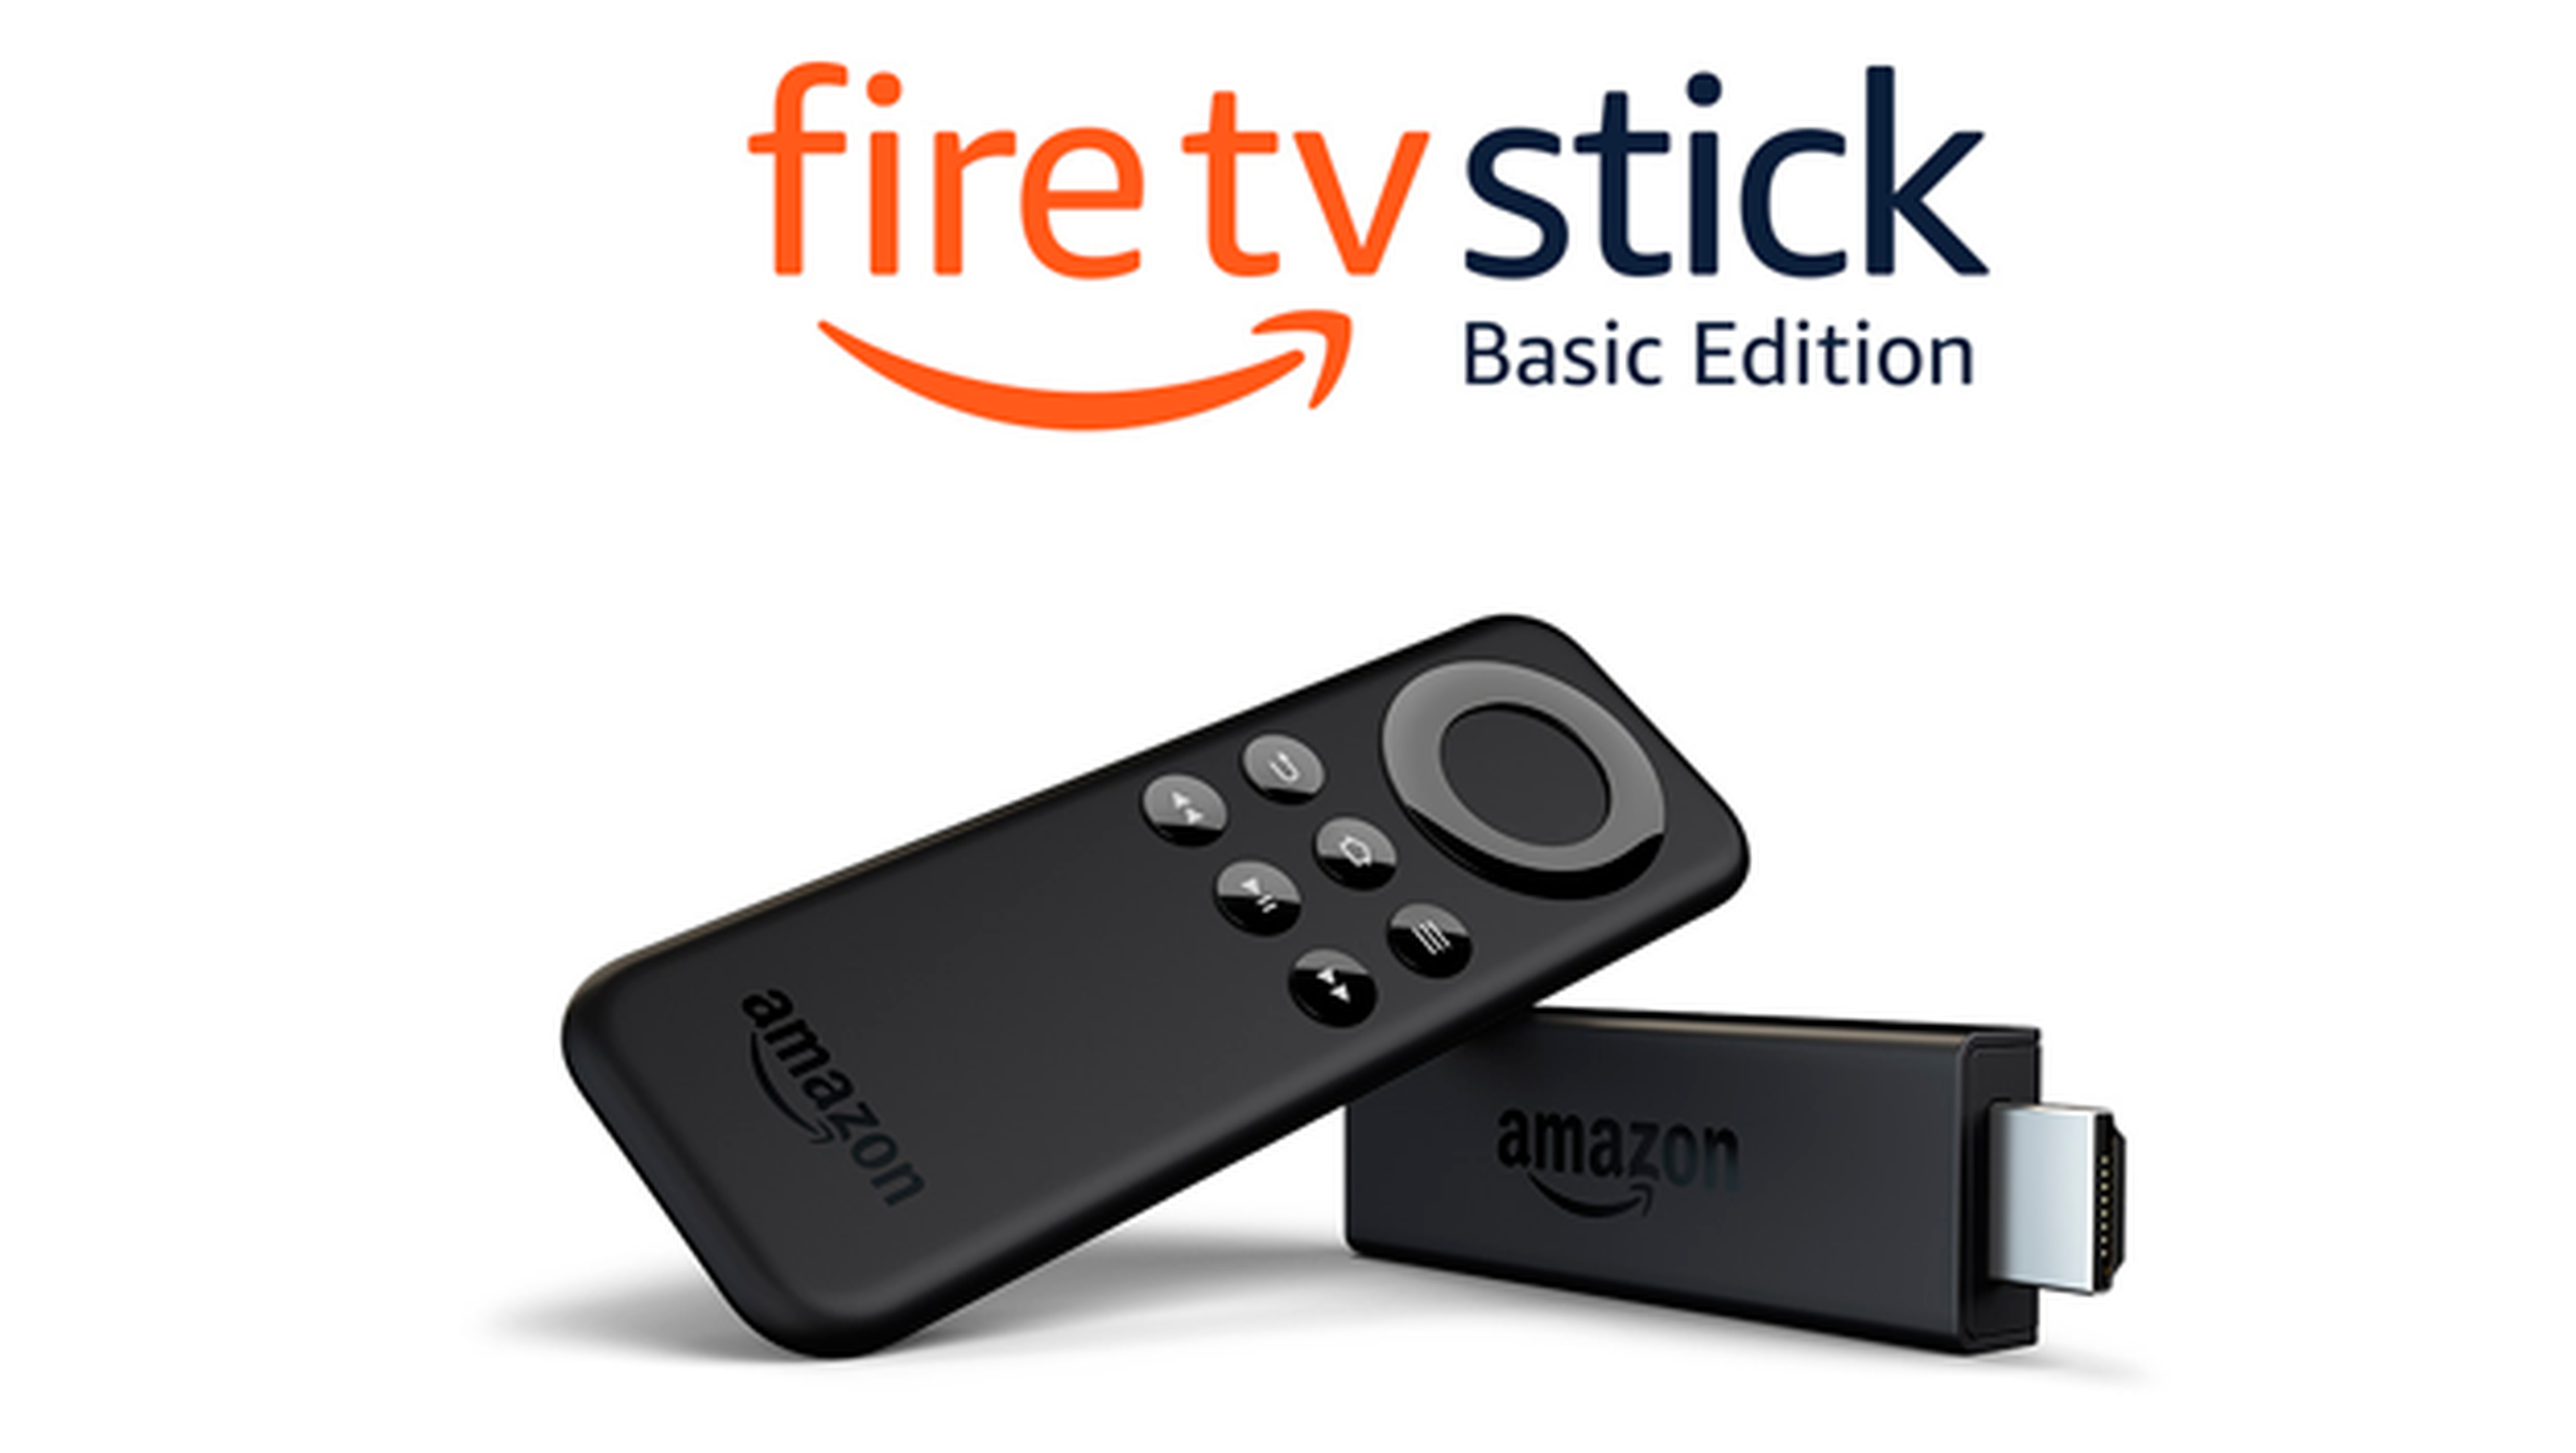 YouTube desaparece del Fire TV de Amazon antes de tiempo